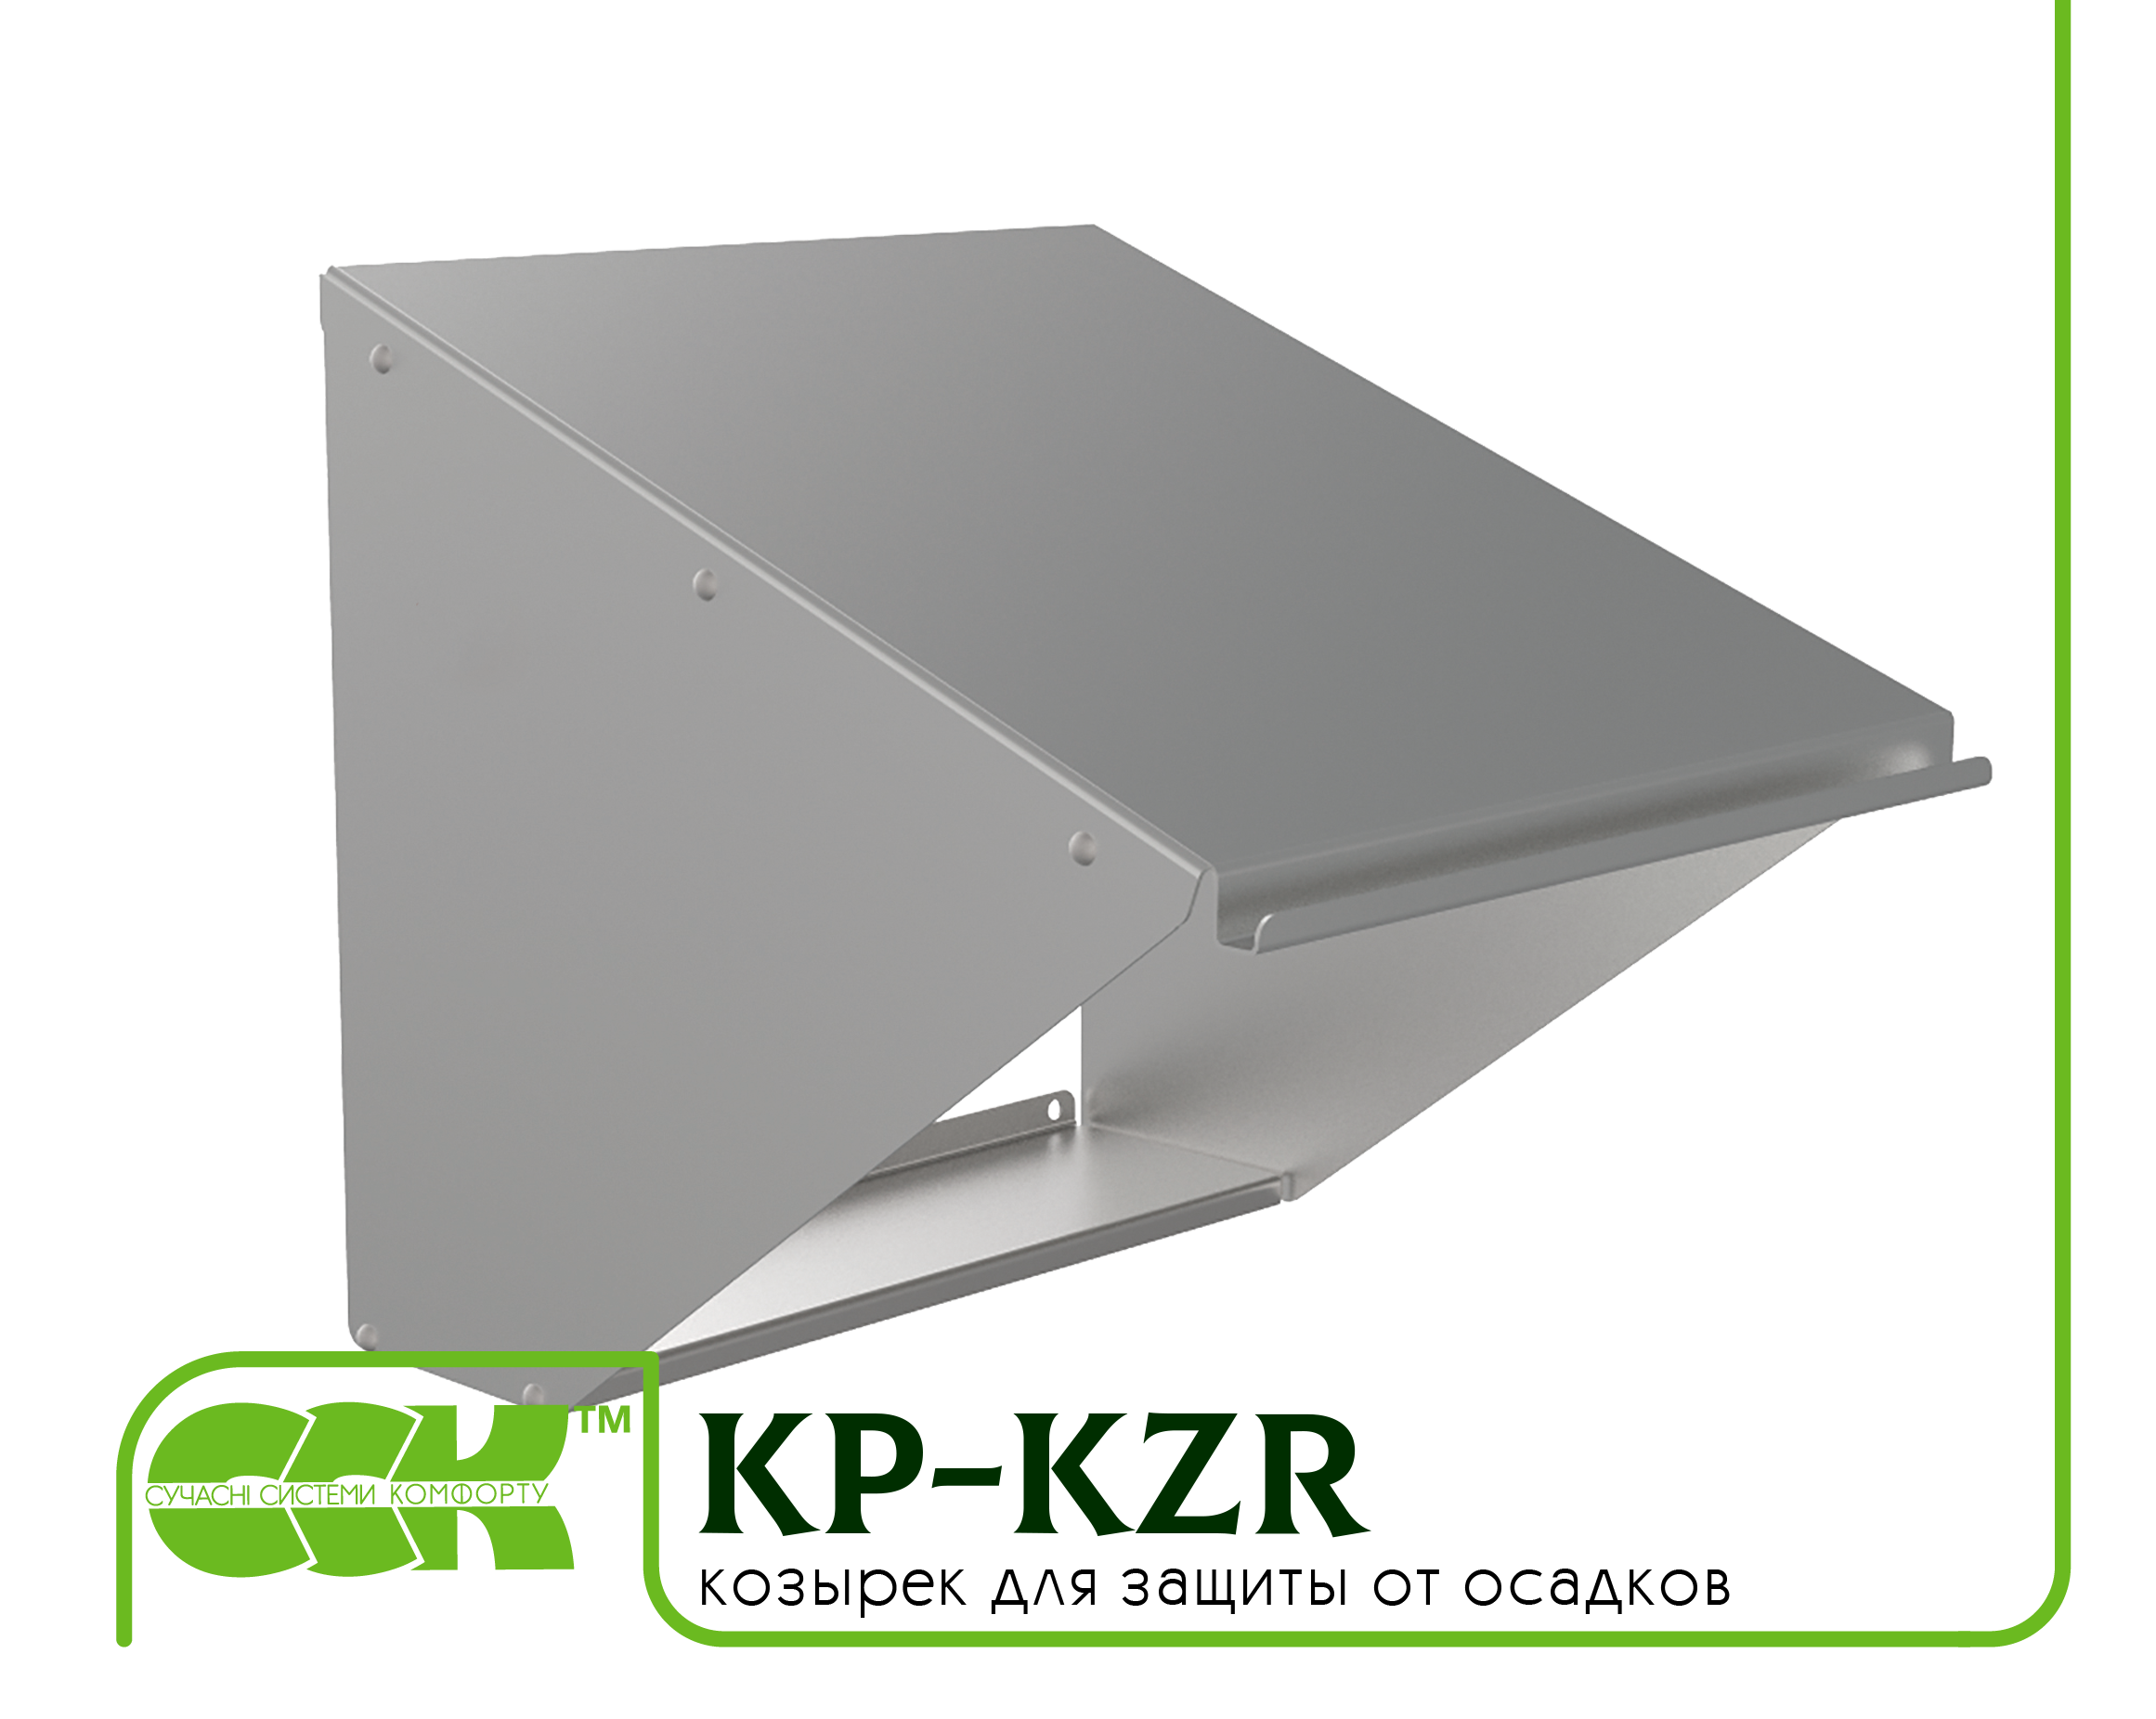 Козырек для защиты вентилятора KP-KZR-67-67